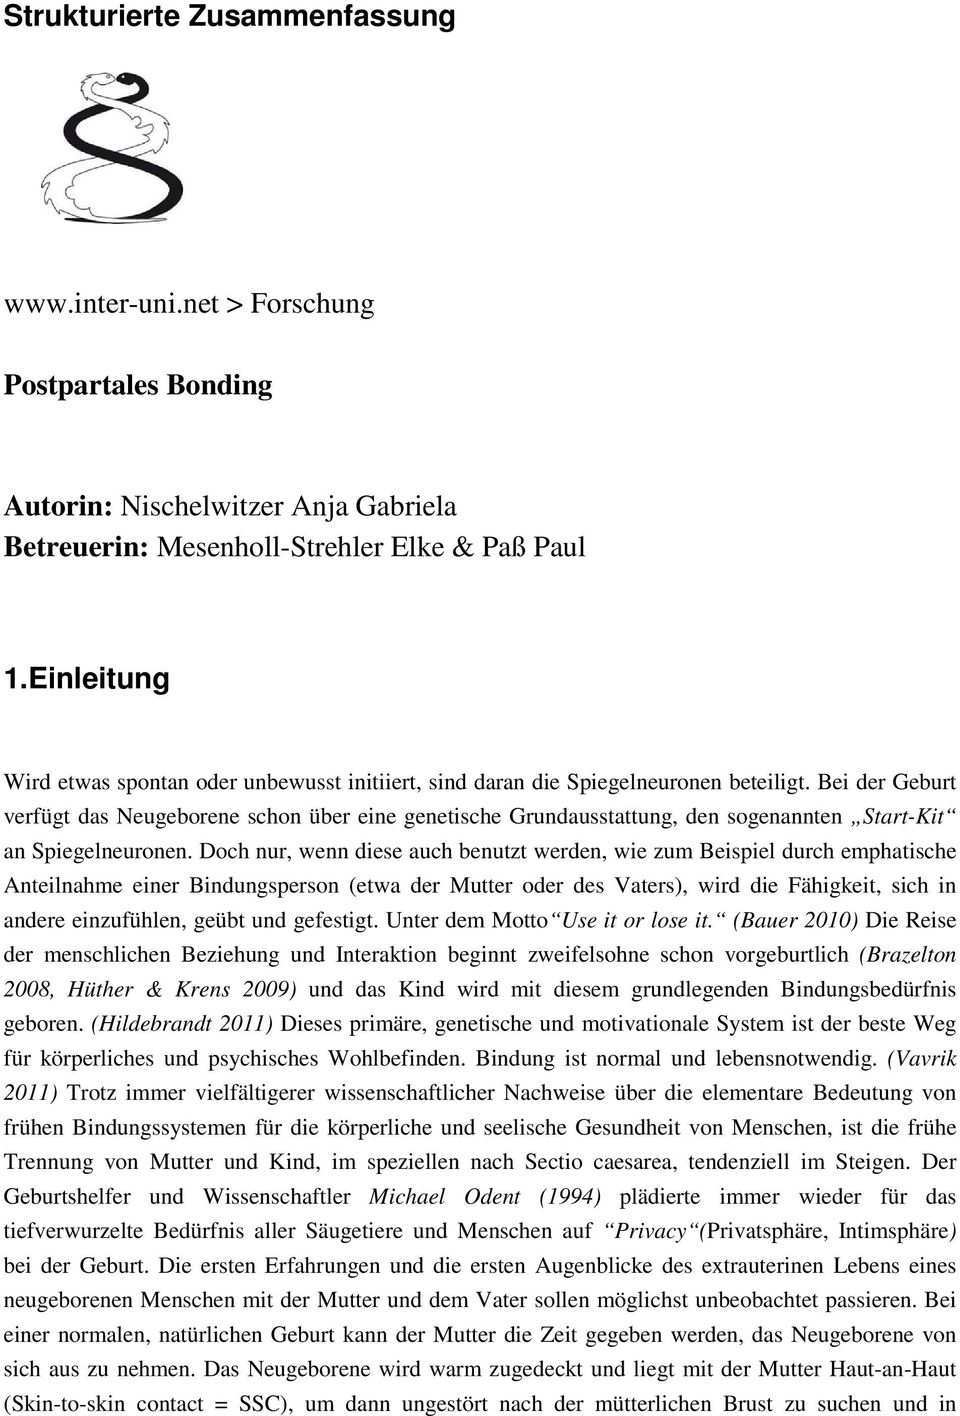 Strukturierte Zusammenfassung Forschung Postpartales Bonding Pdf Free Download